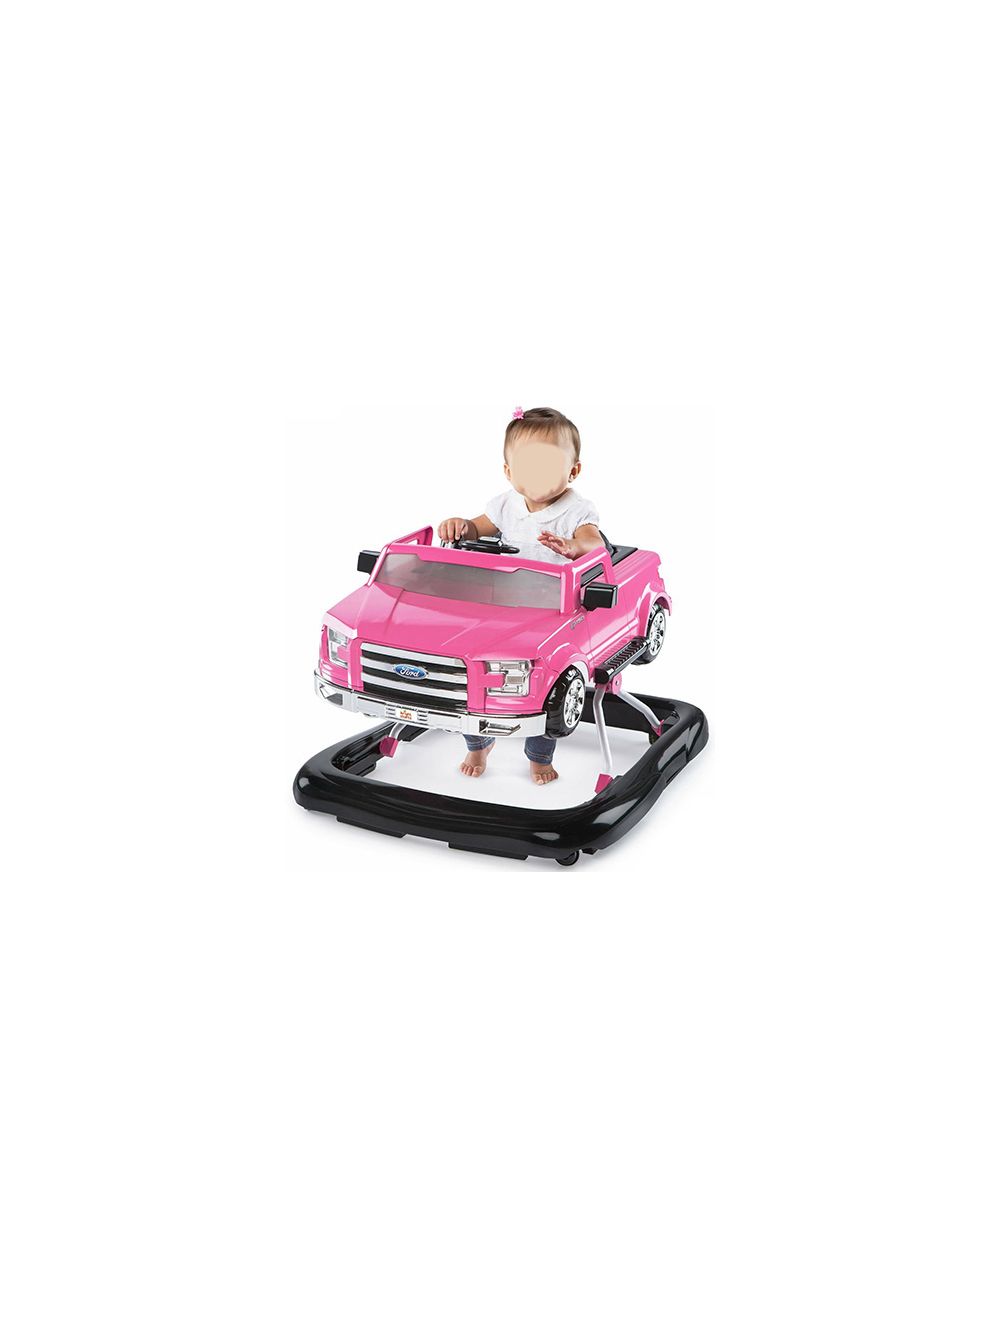 Joymaker Baby Walker Car Pink